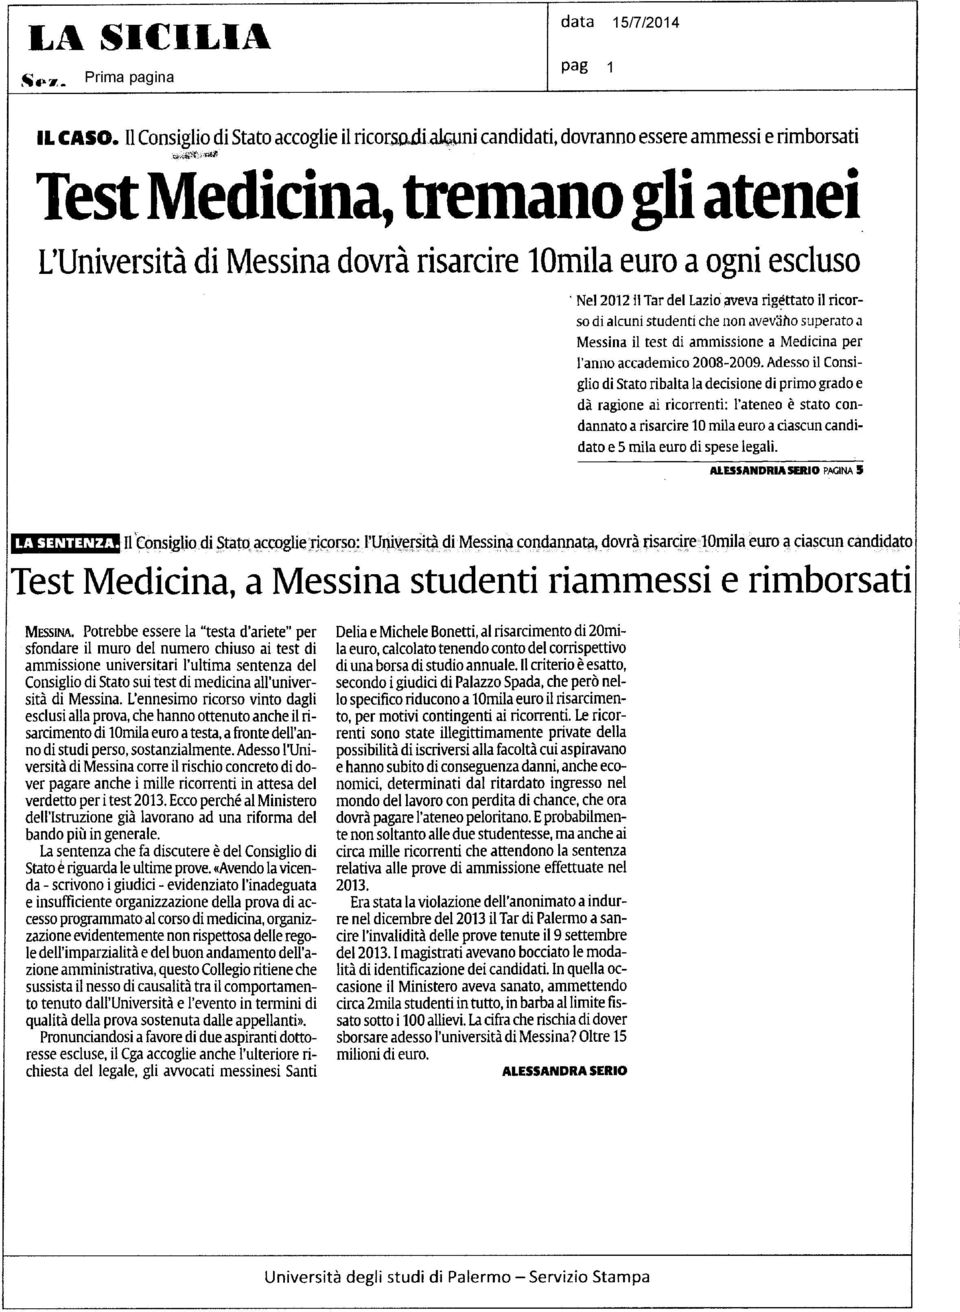 Nel 2012 il Tar del Lazio aveva rigéttato il ricorso di alcuni studenti che non avev5ho superato a Messina il test di ammissione a Medicina per l'anno accademico 2008-2009.